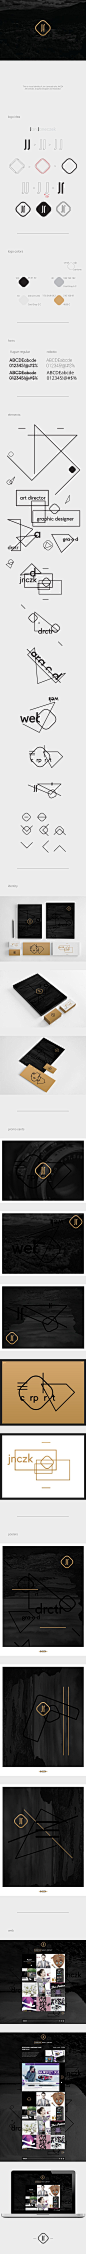 (1) JNCZK - Visual Identity | Designer: J N CZ K | logo | Pinterest